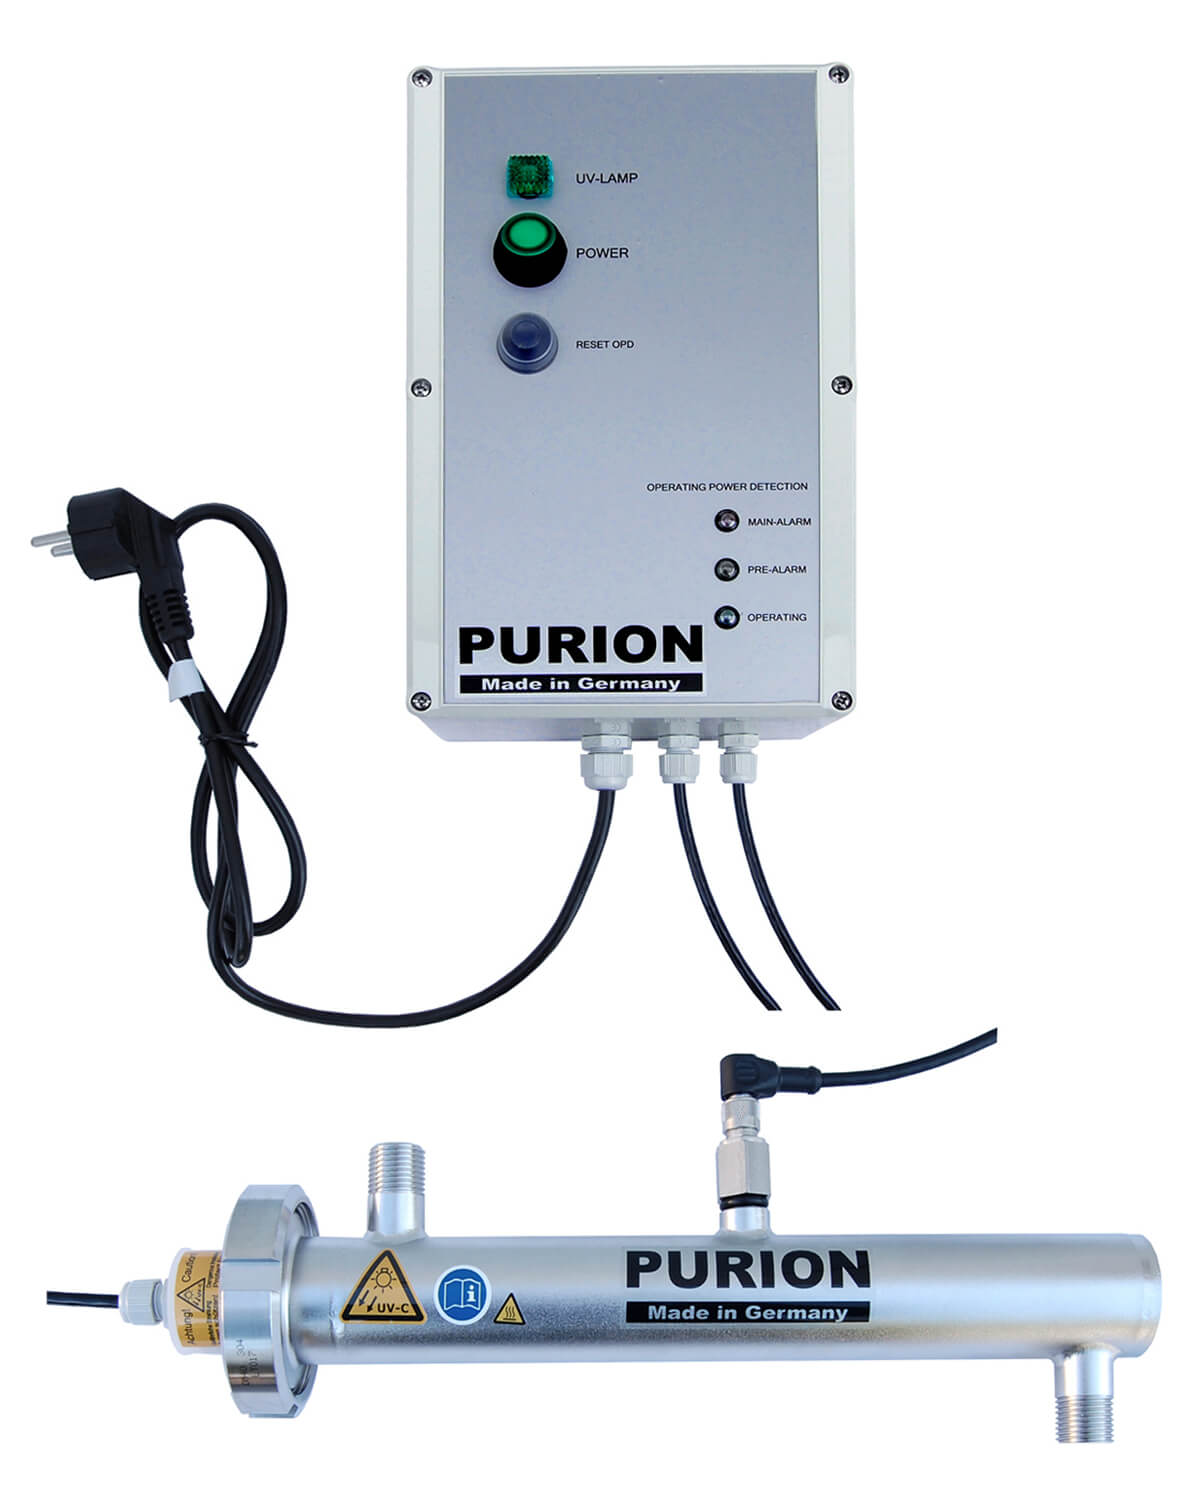 Die PURION 500 110 - 240 V AC OPD von UV Concept GmbH ist eine hochmoderne Desinfektionsanlage, die die Trinkwasseraufbereitung revolutioniert und eine zuverlässige Lösung für alle bietet, die ein autarkes Leben suchen.